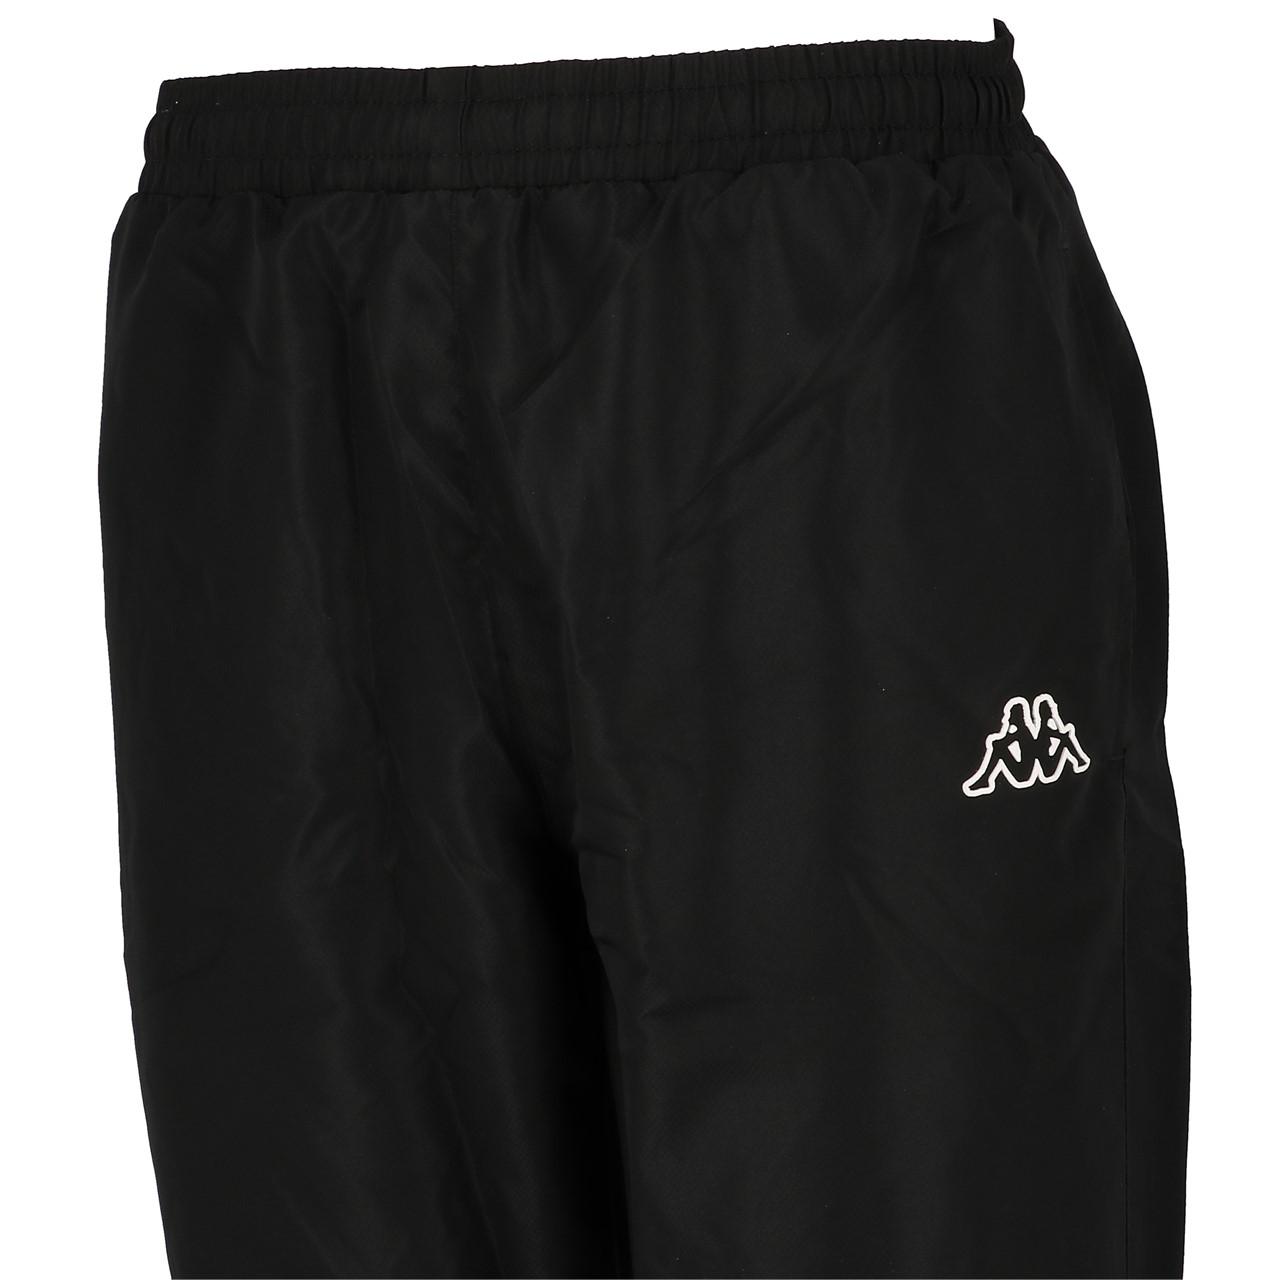 Neuf Pantalon de survêtement Panzeri Uni h noir/or jersey pant Noir 64555